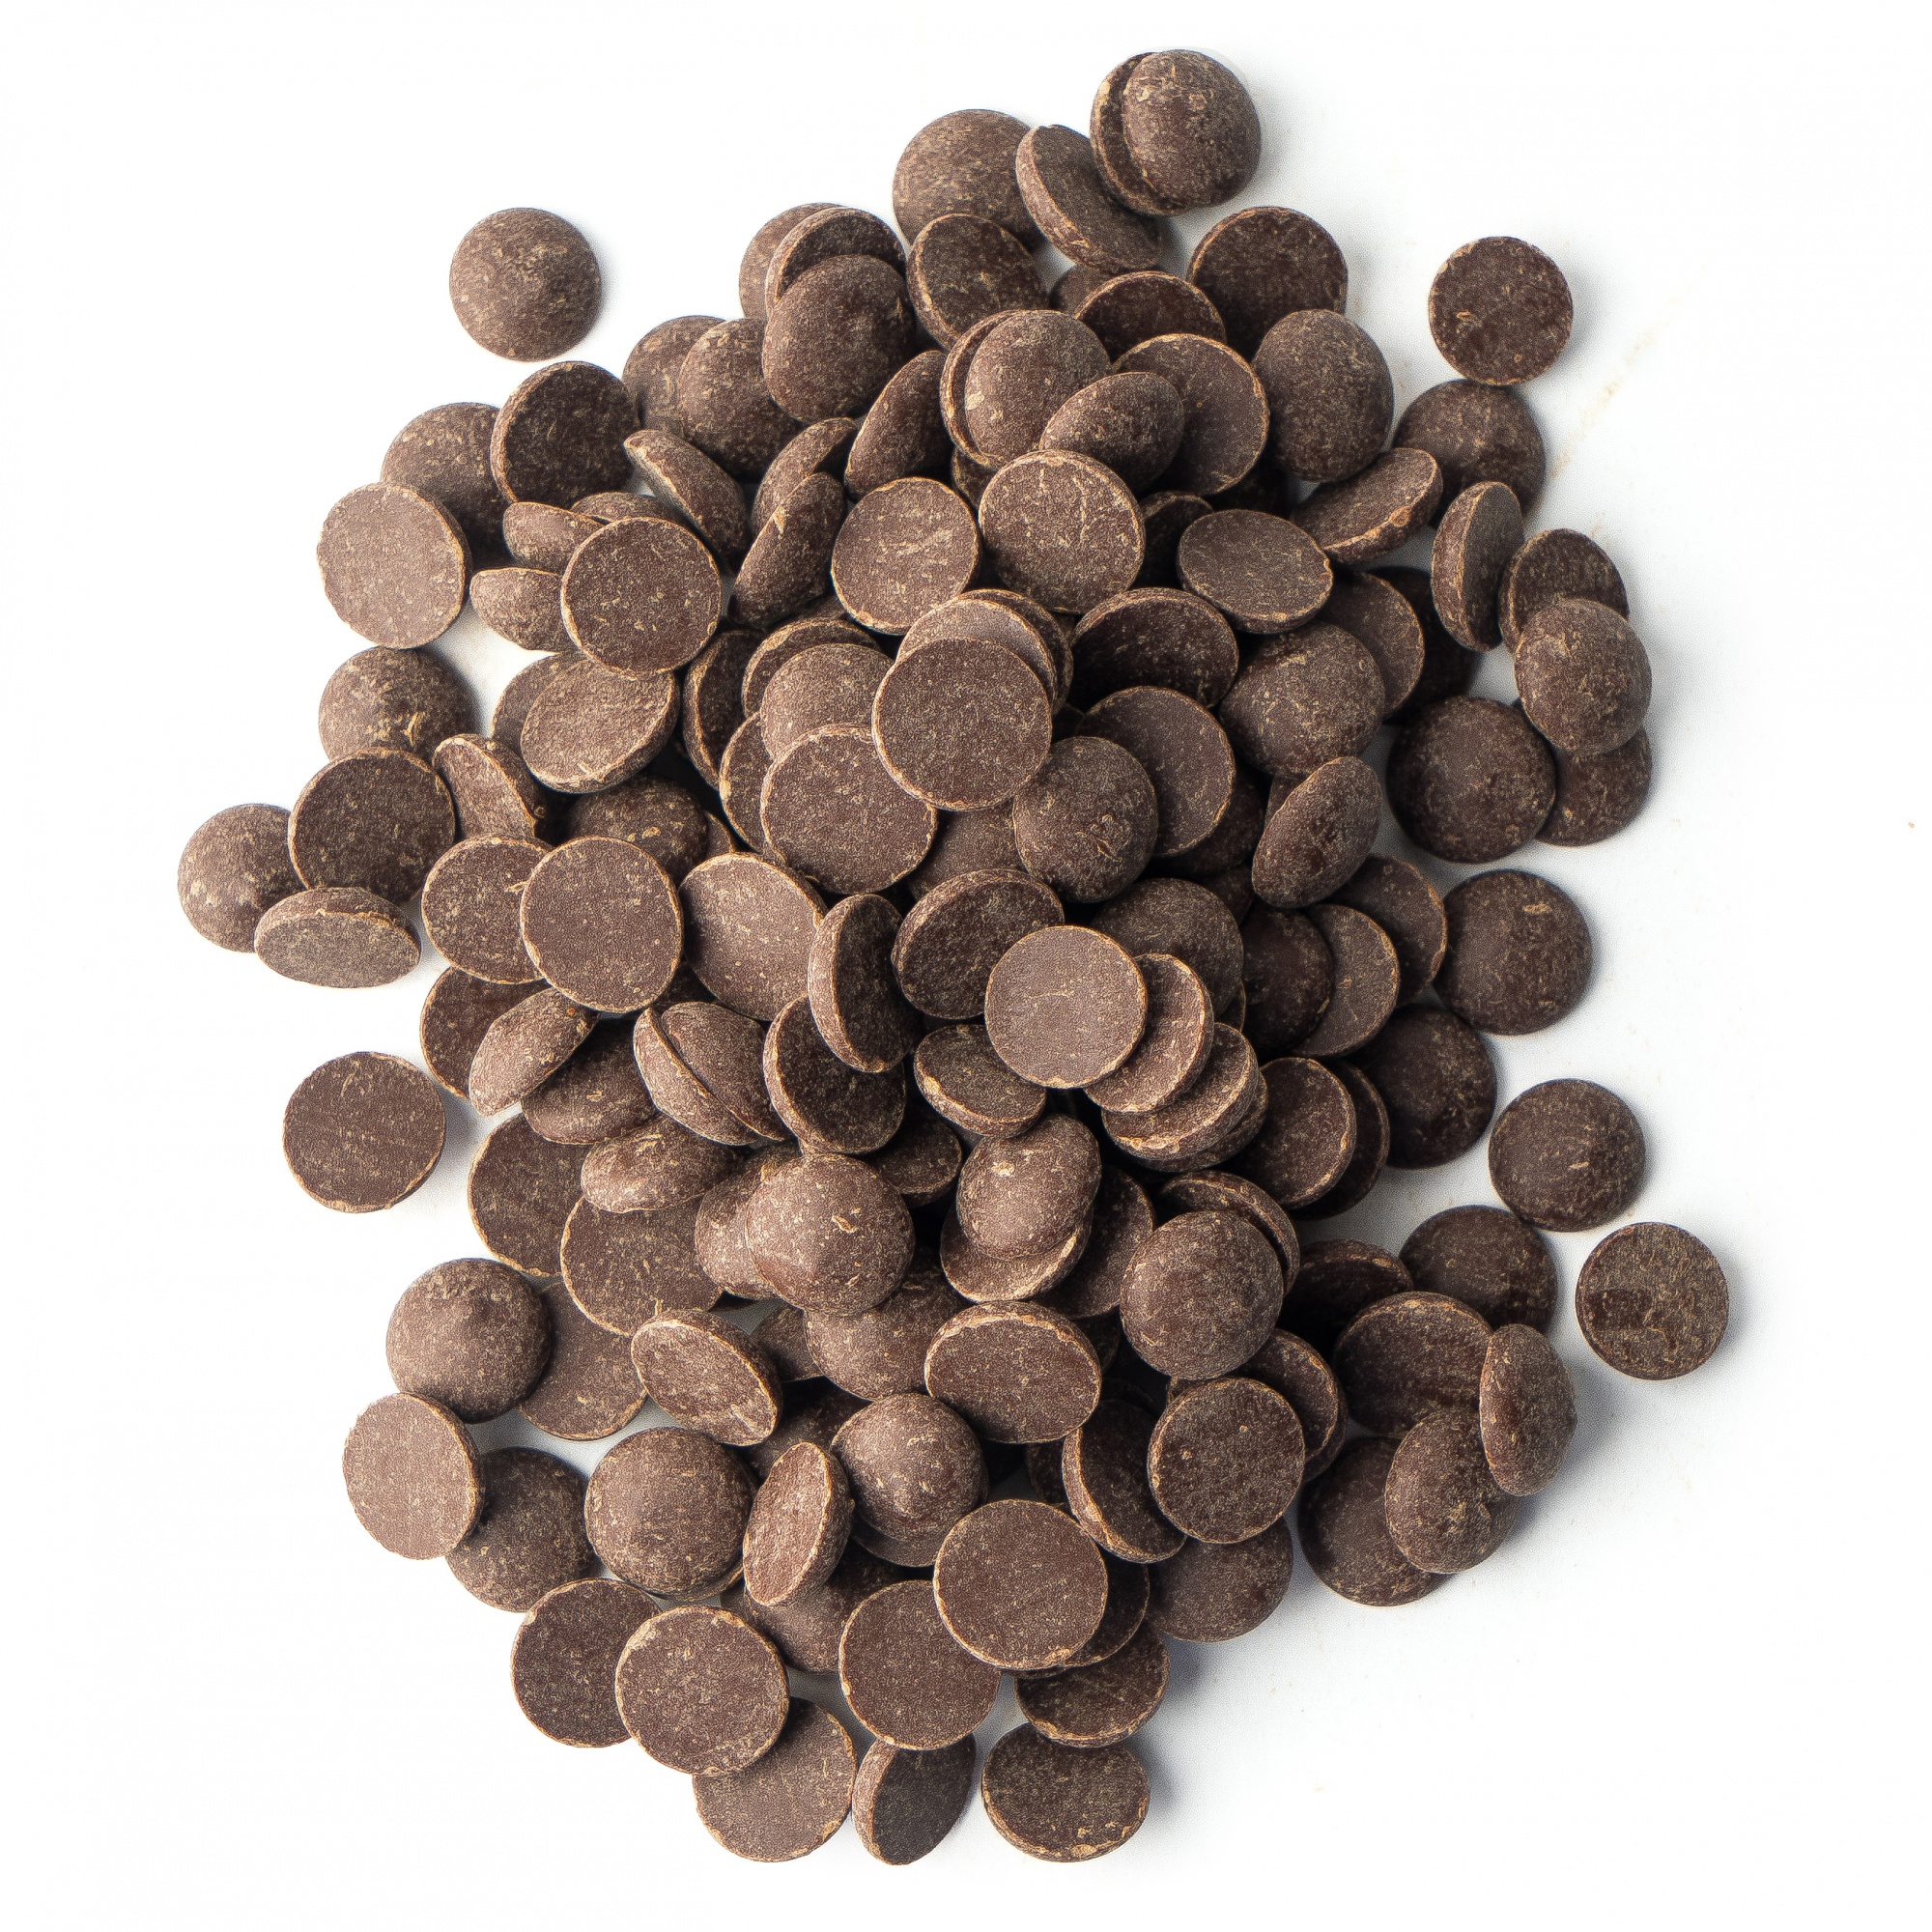 Шоколад тёмный 54,5%, №811, Callebaut, Бельгия, 100 г  | Фото — Магазин Andy Chef  1